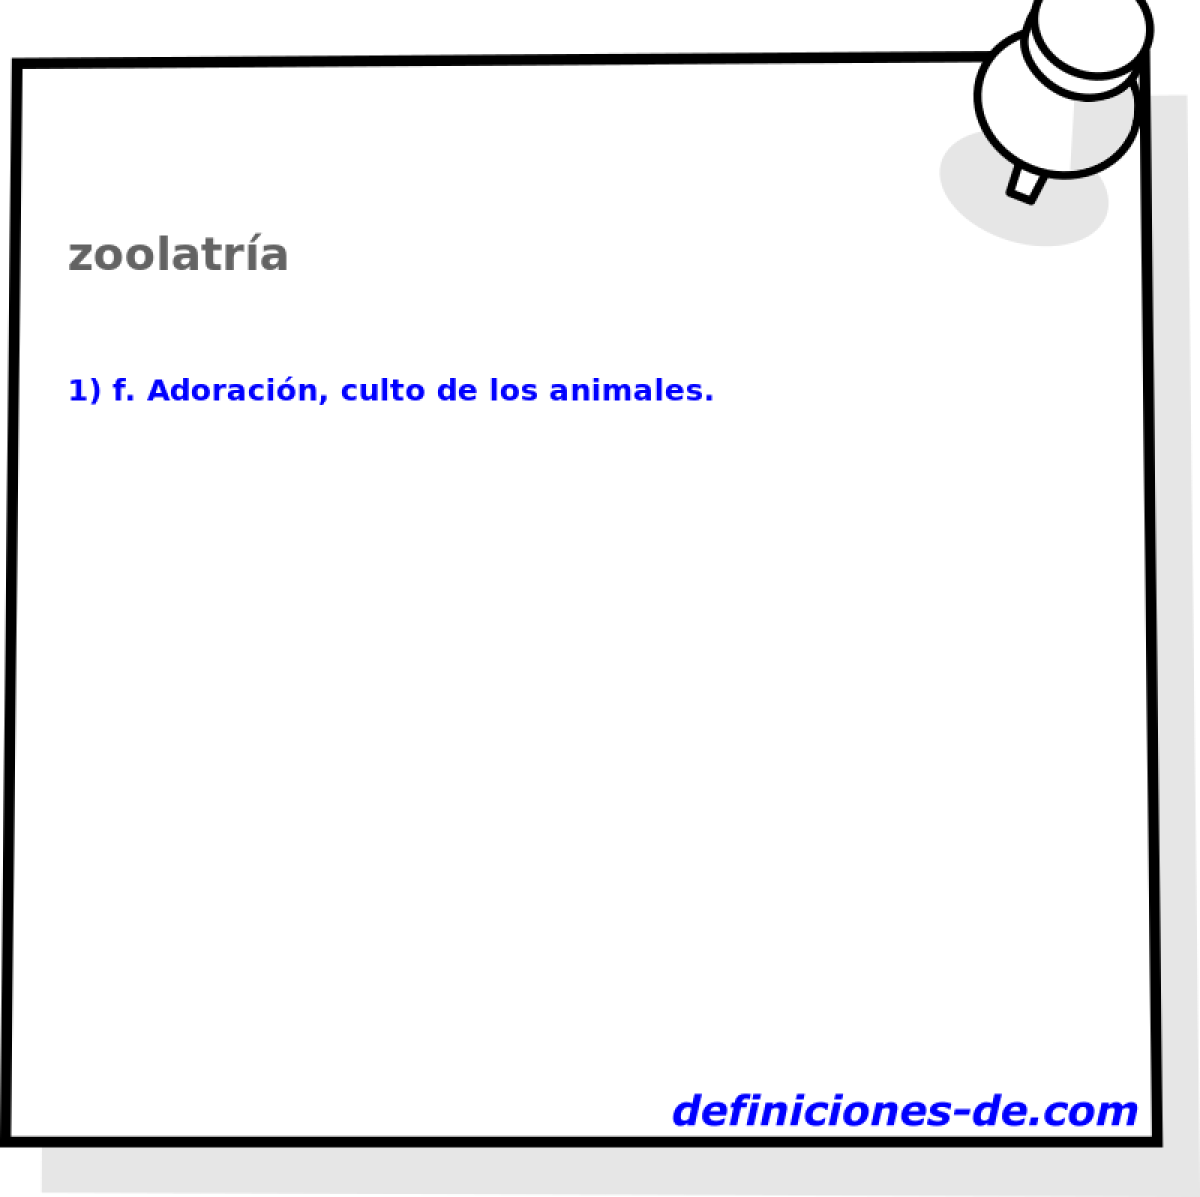 zoolatra 